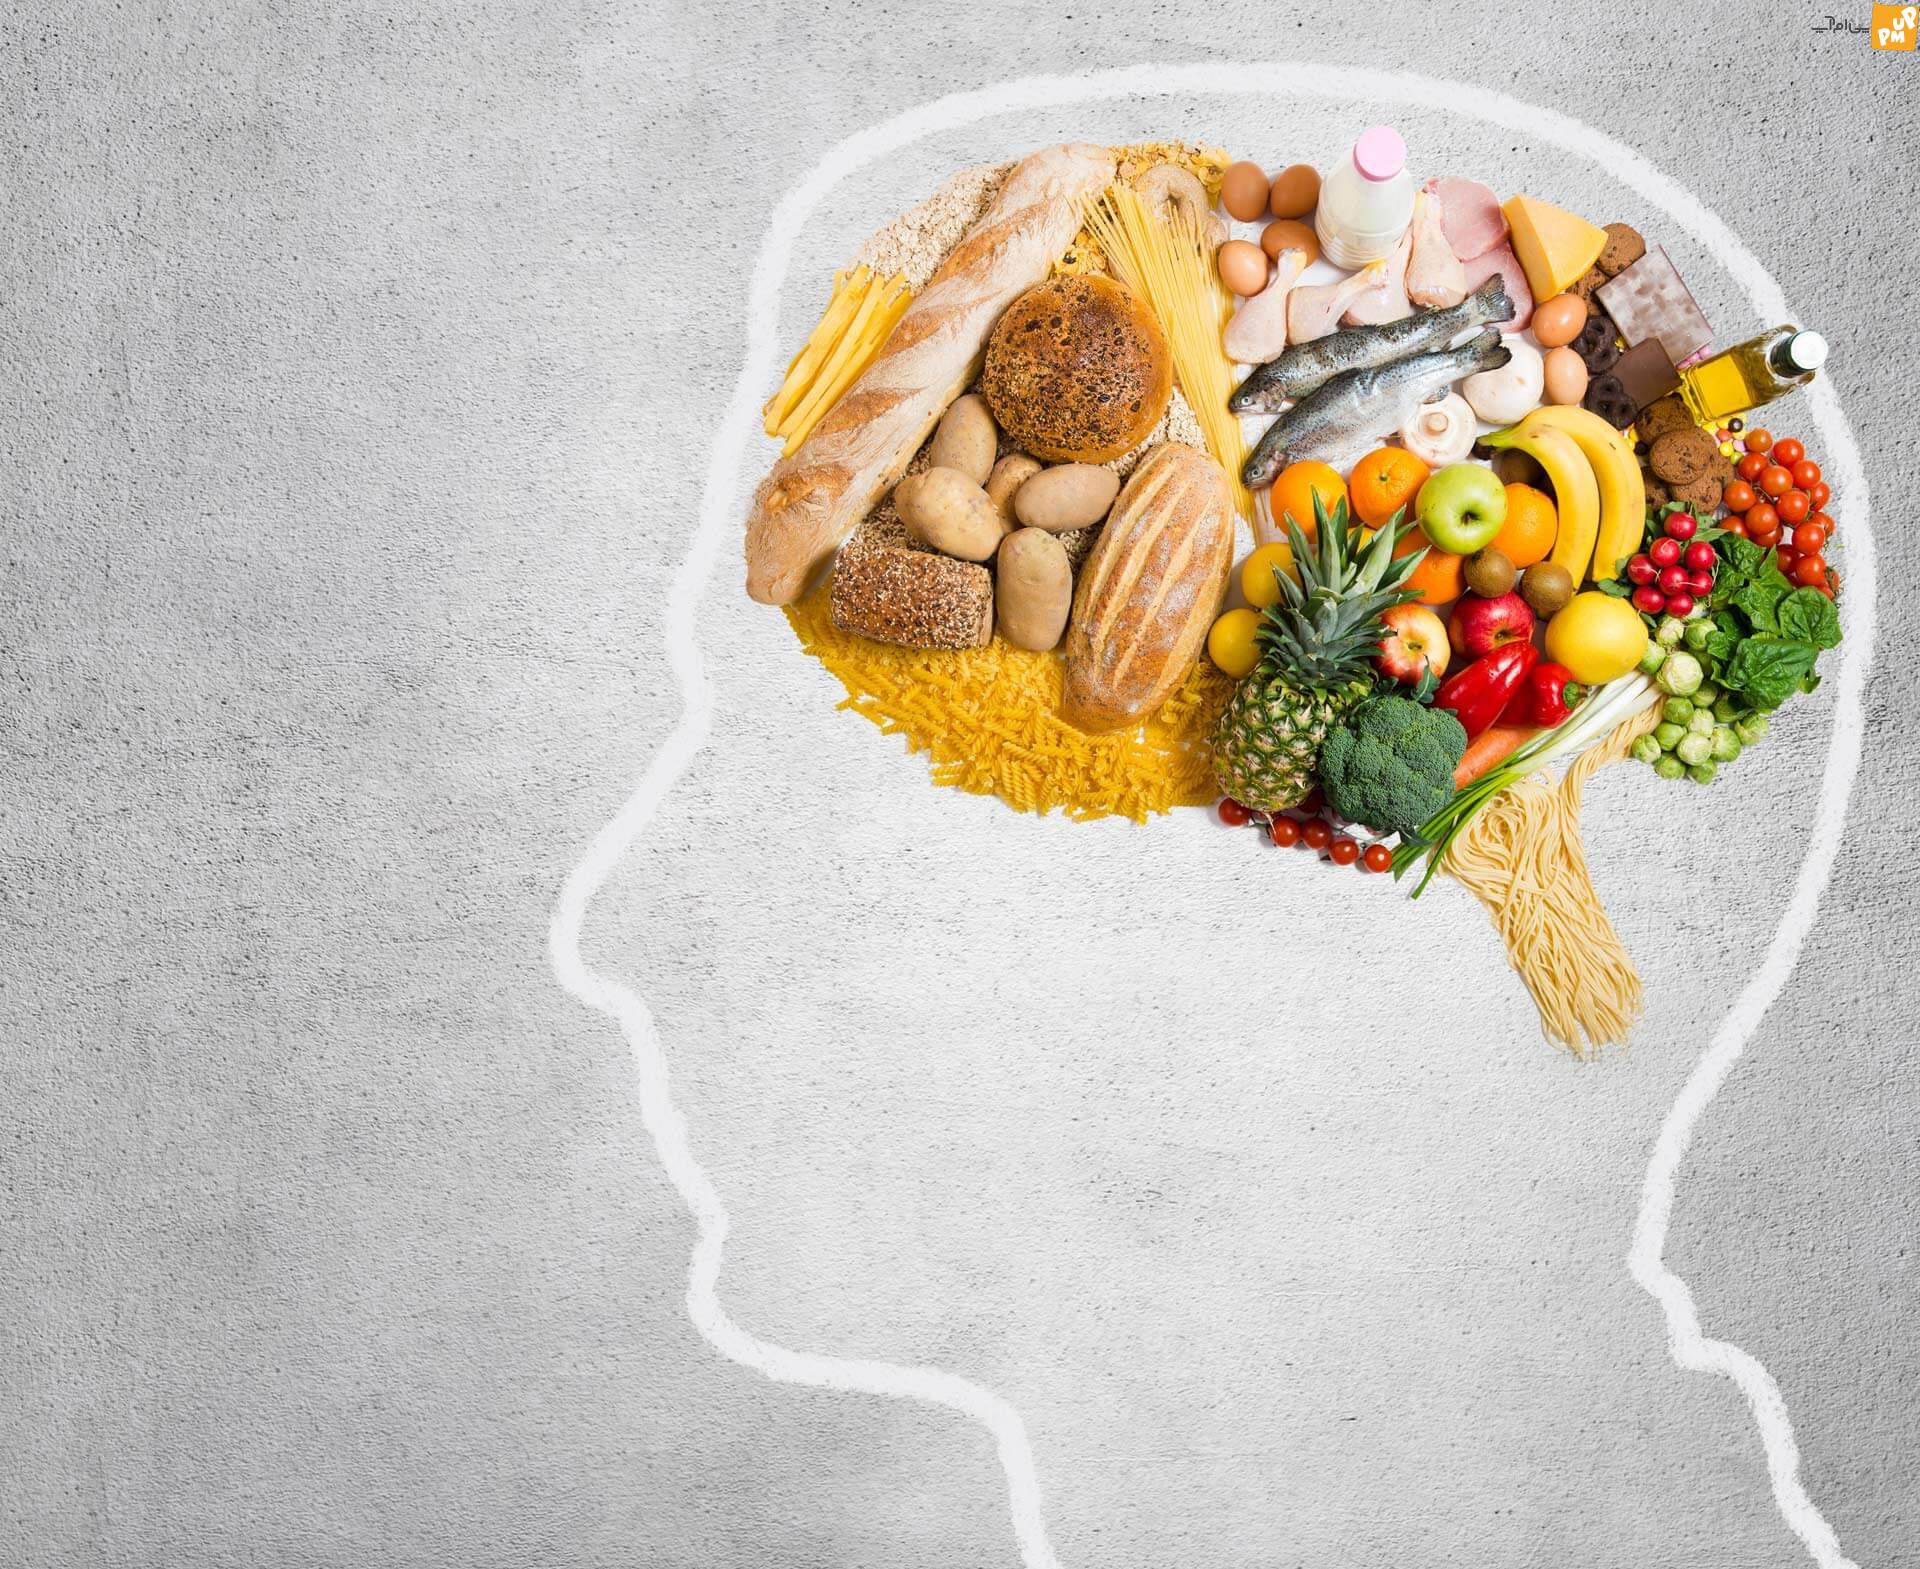 بررسی تاثیر غذای سالم بر سلامت روان! / بیماری های روانی خود را با تغذیه درمان کنید!